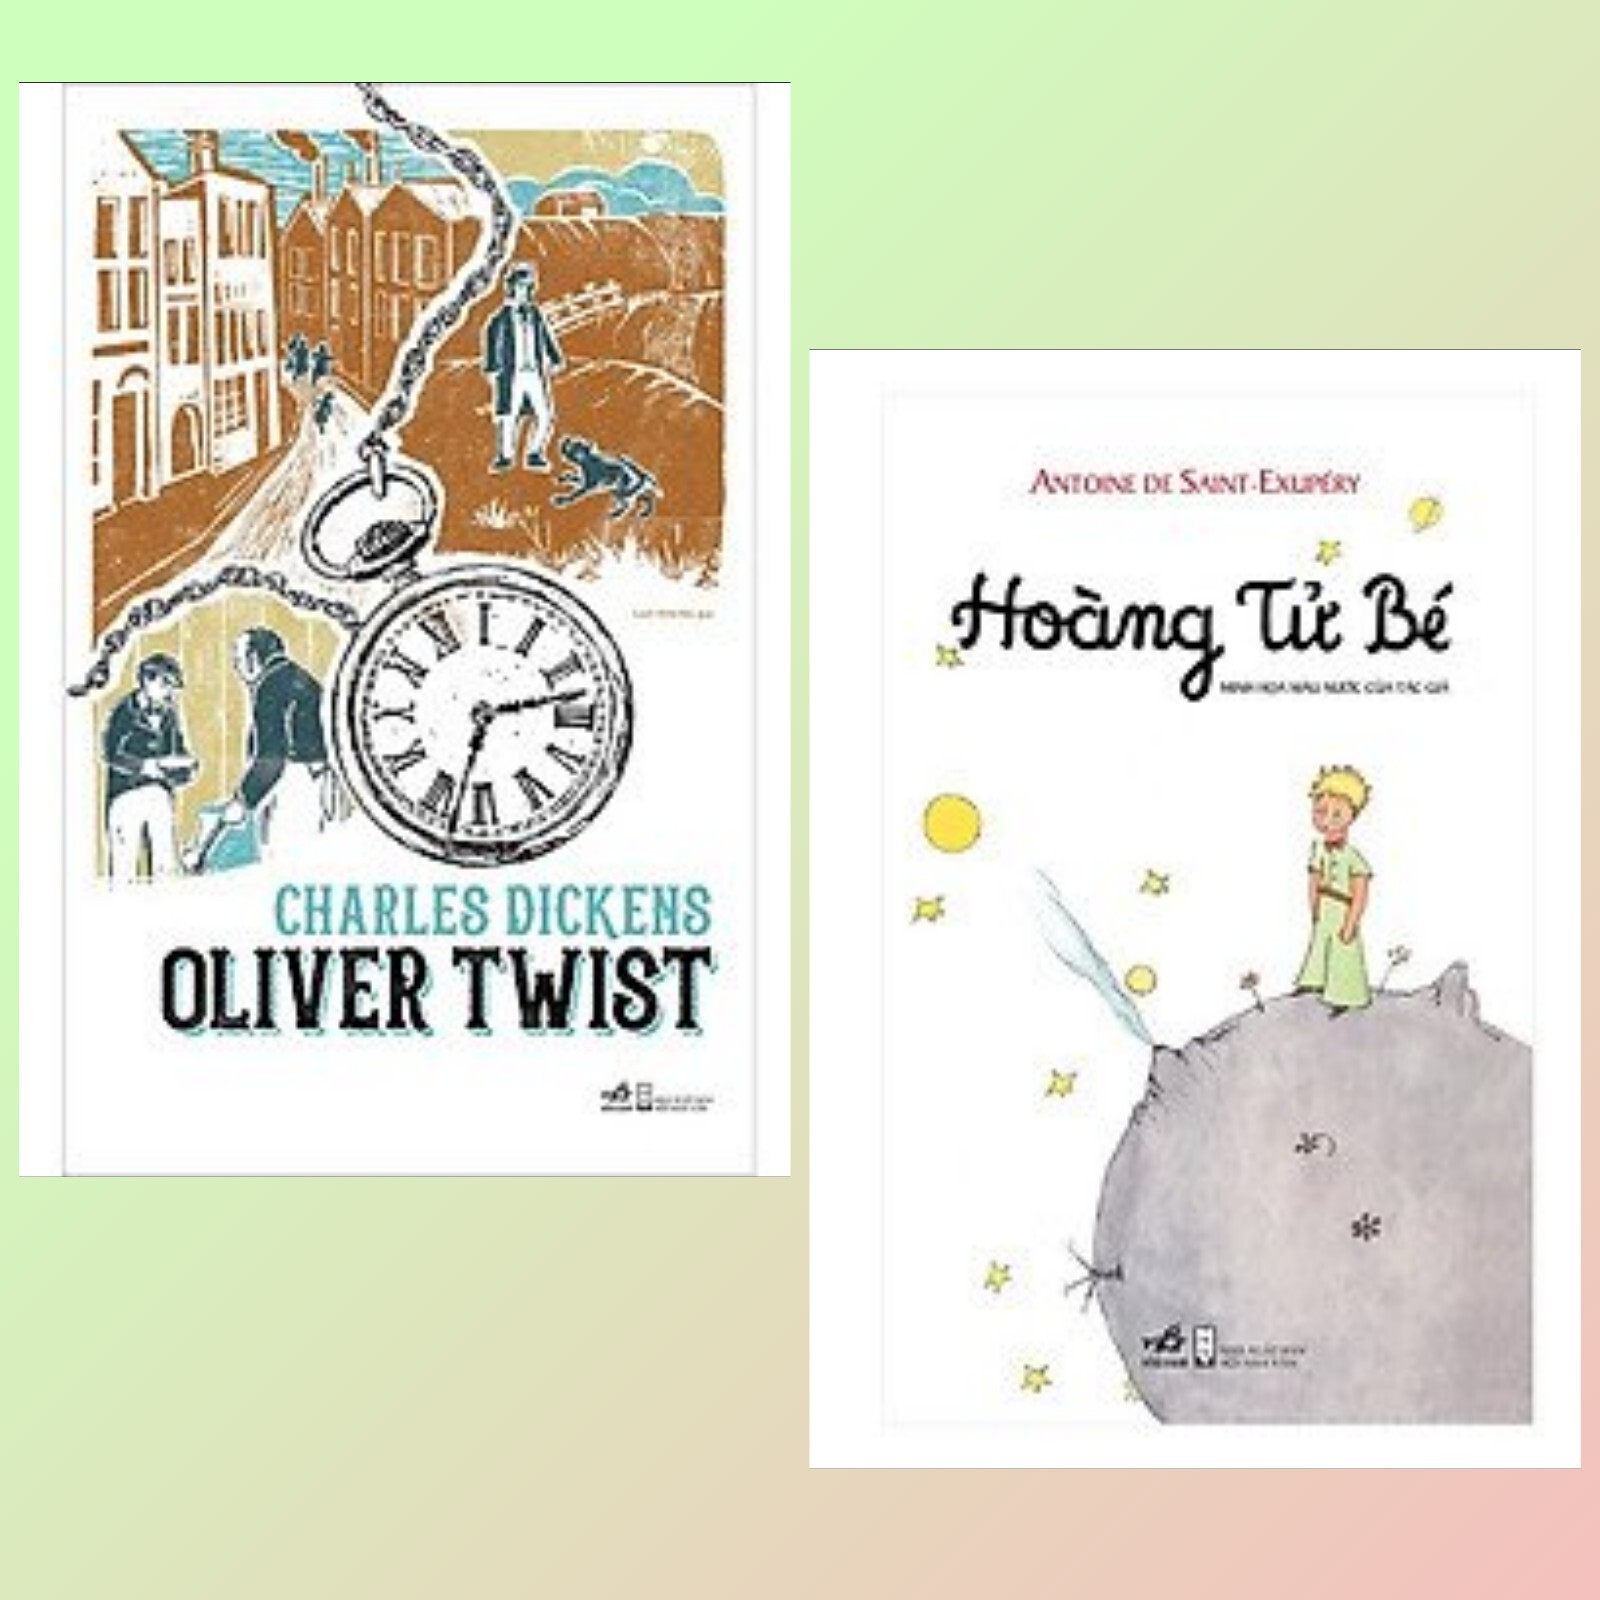 Văn Học Cổ Điển Bỏ Túi - Oliver Twist (2 Tập)